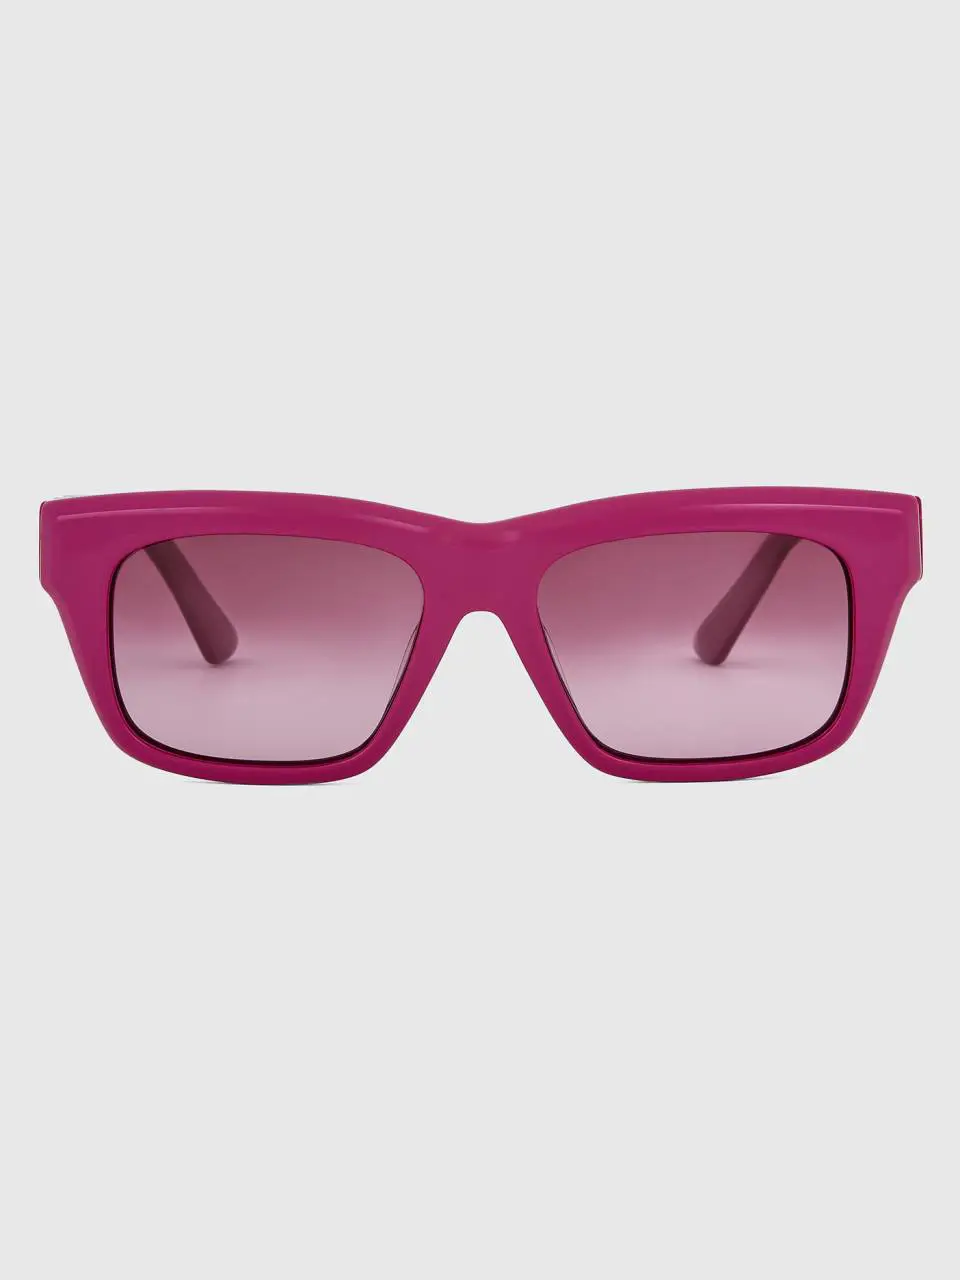 Benetton fuchsia sunglasses. 1